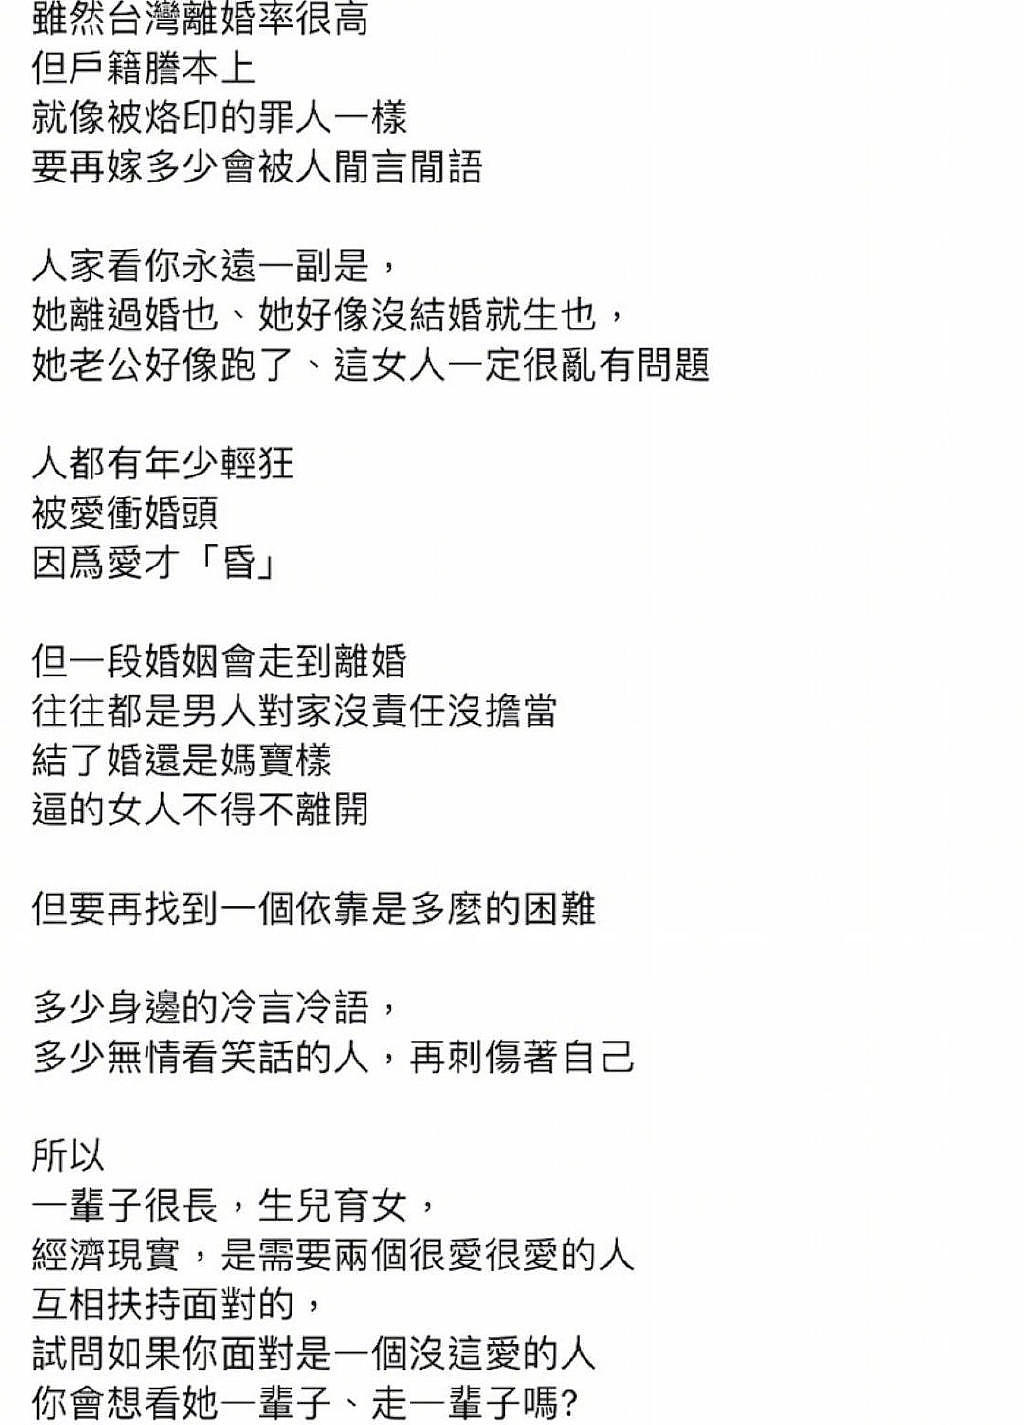 前TVB男星林利离婚后发文称流下男儿泪，前妻控诉遭暴力对待 - 5